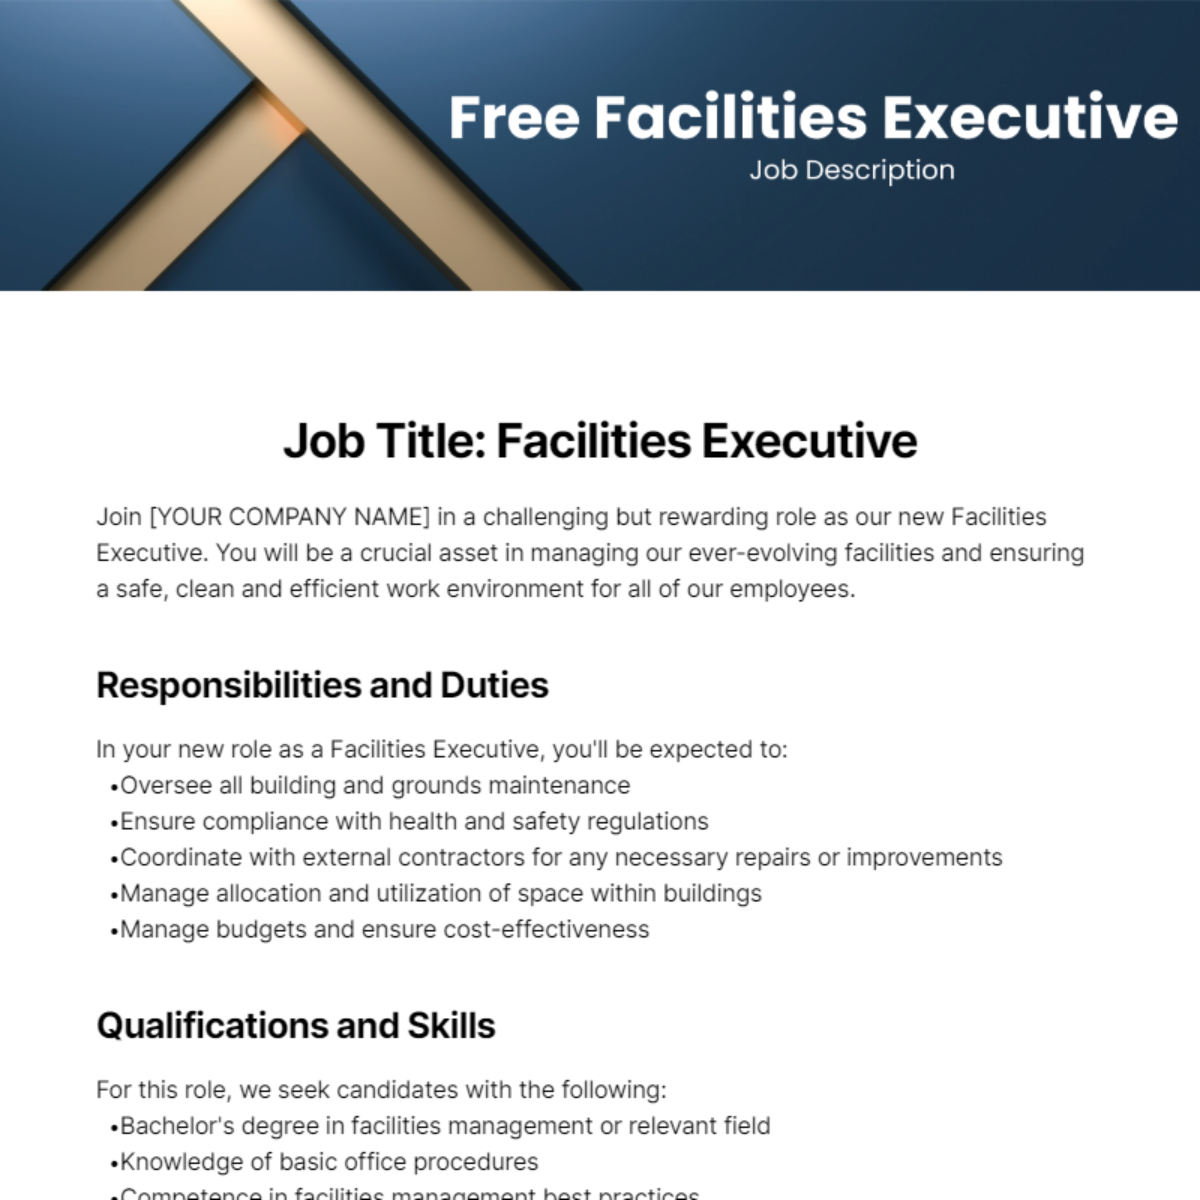 Free Facilities Executive Job Description Template